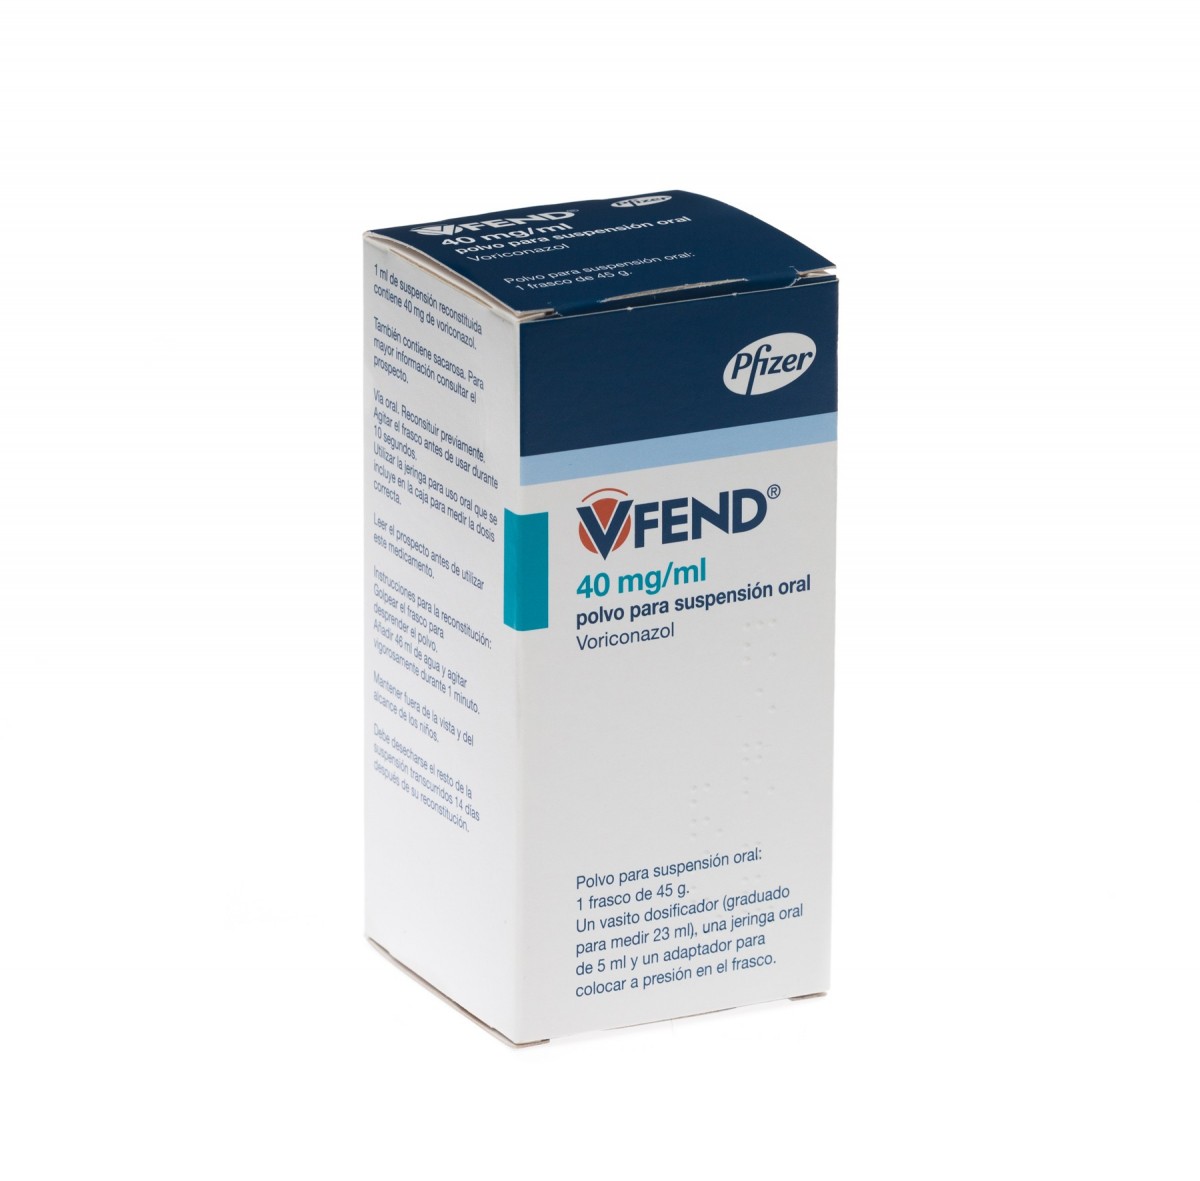 VFEND 40 mg/ml POLVO PARA SUSPENSION ORAL, 1 frasco de 75 ml fotografía del envase.